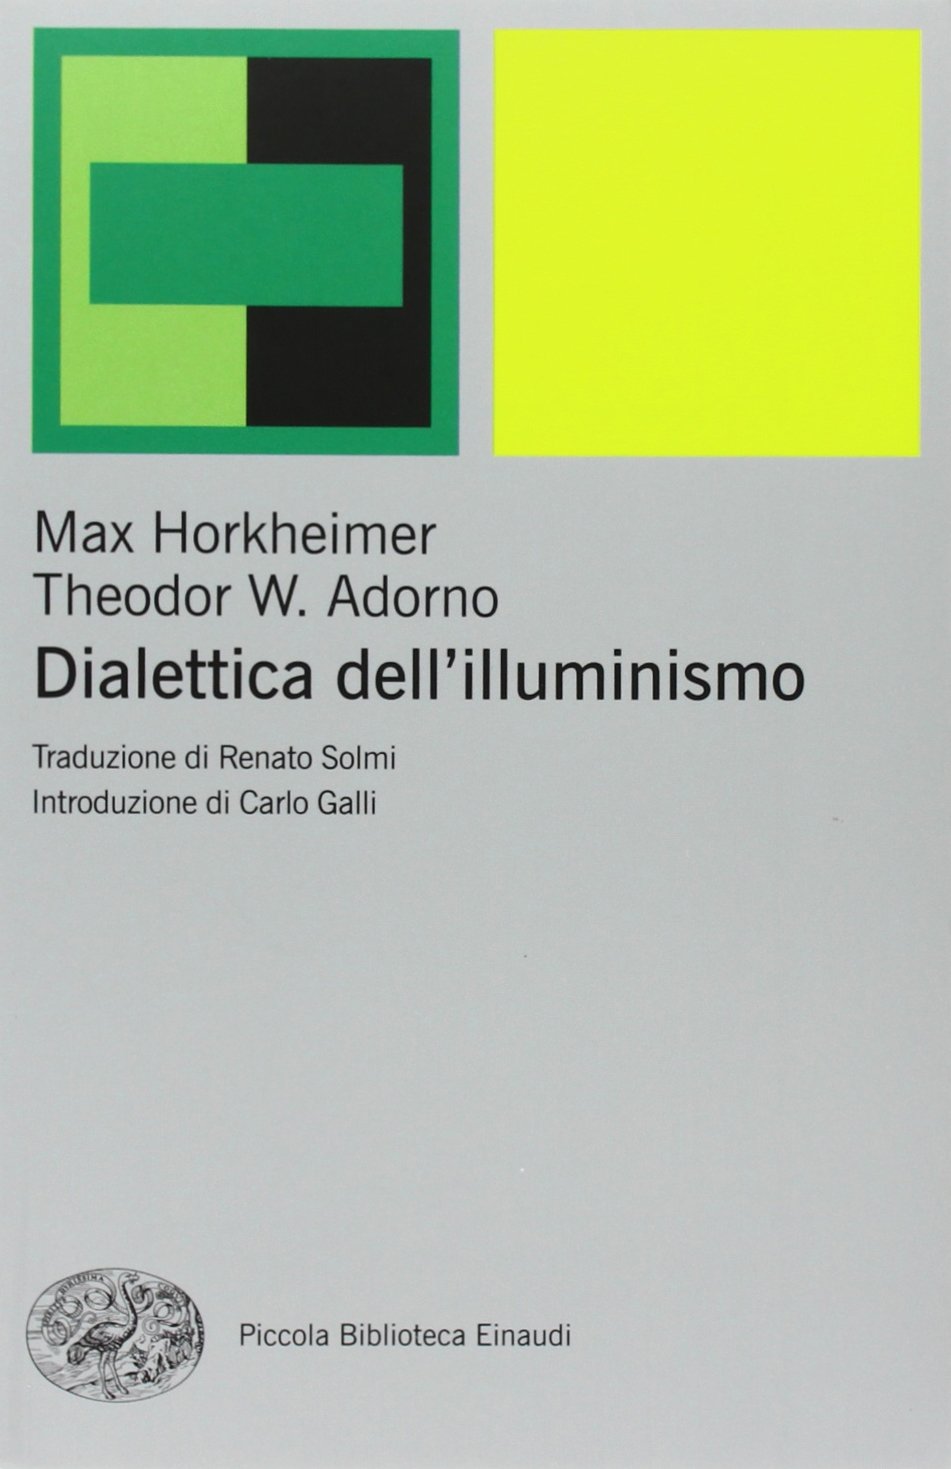 Libri Max Horkheimer Theodor W. Adorno - Dialettica DellIlluminismo NUOVO SIGILLATO EDIZIONE DEL SUBITO DISPONIBILE